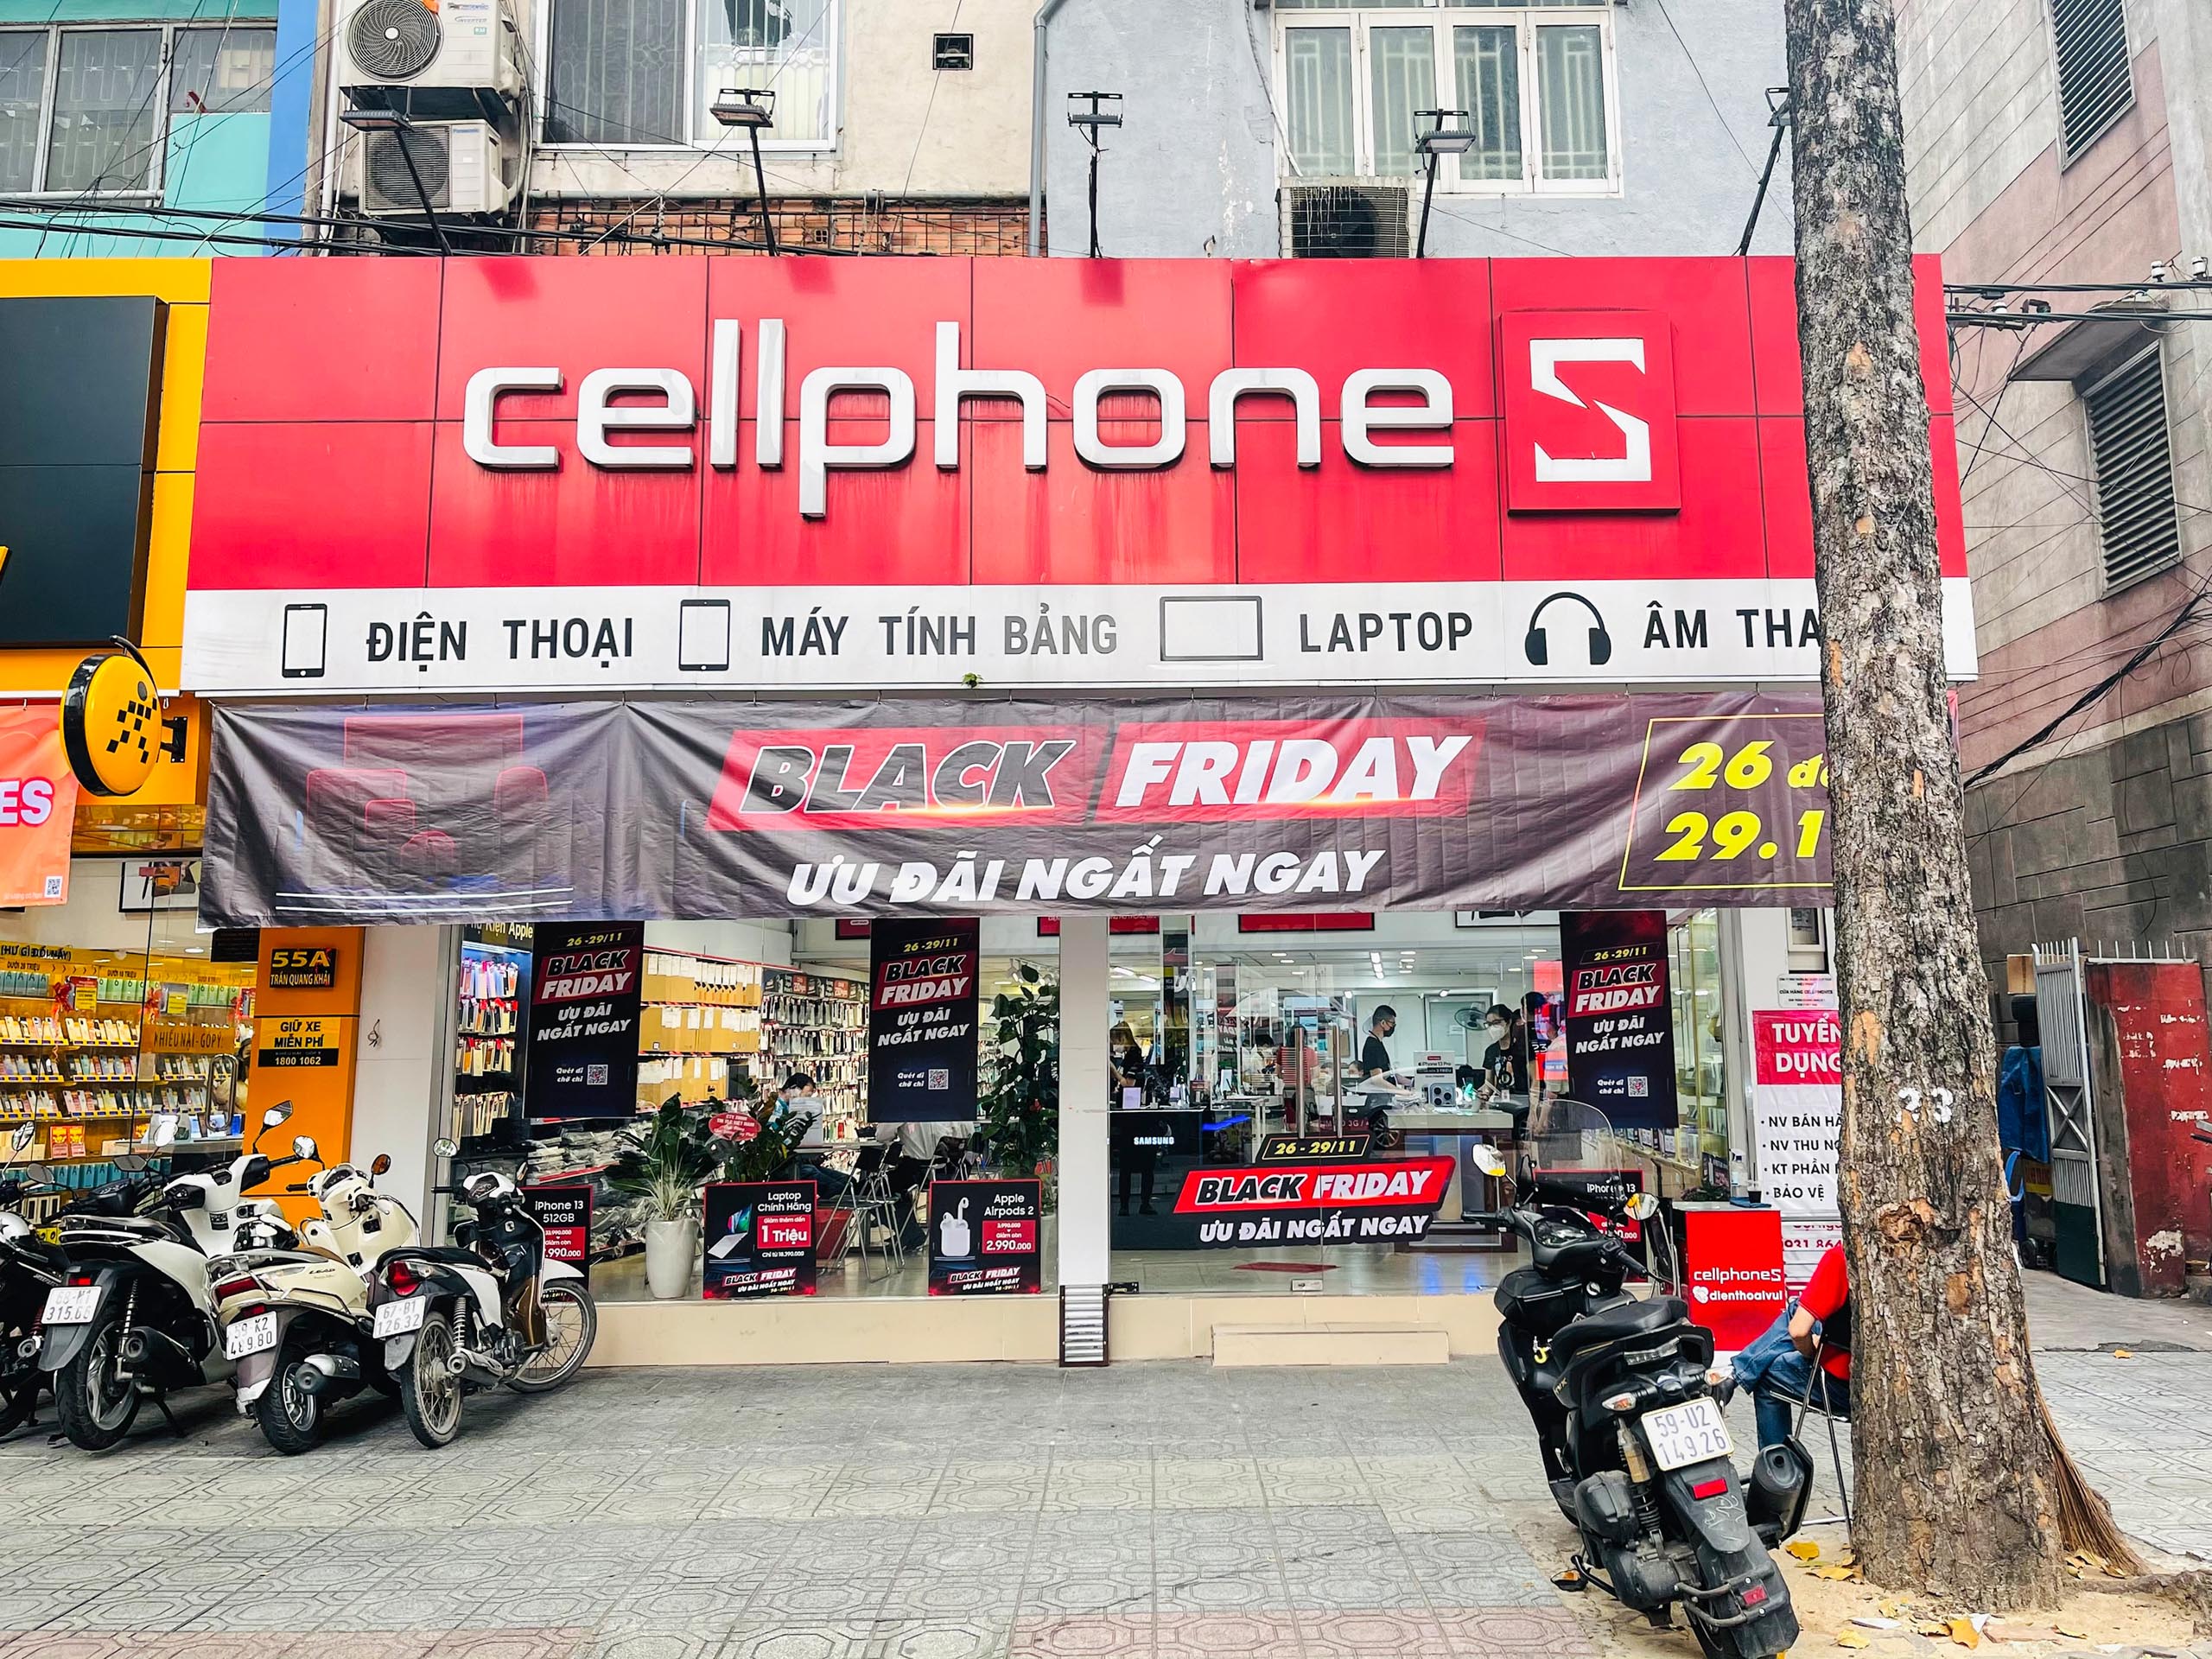 Black Friday - Sale lớn nhất năm của CellphoneS đã trở lại